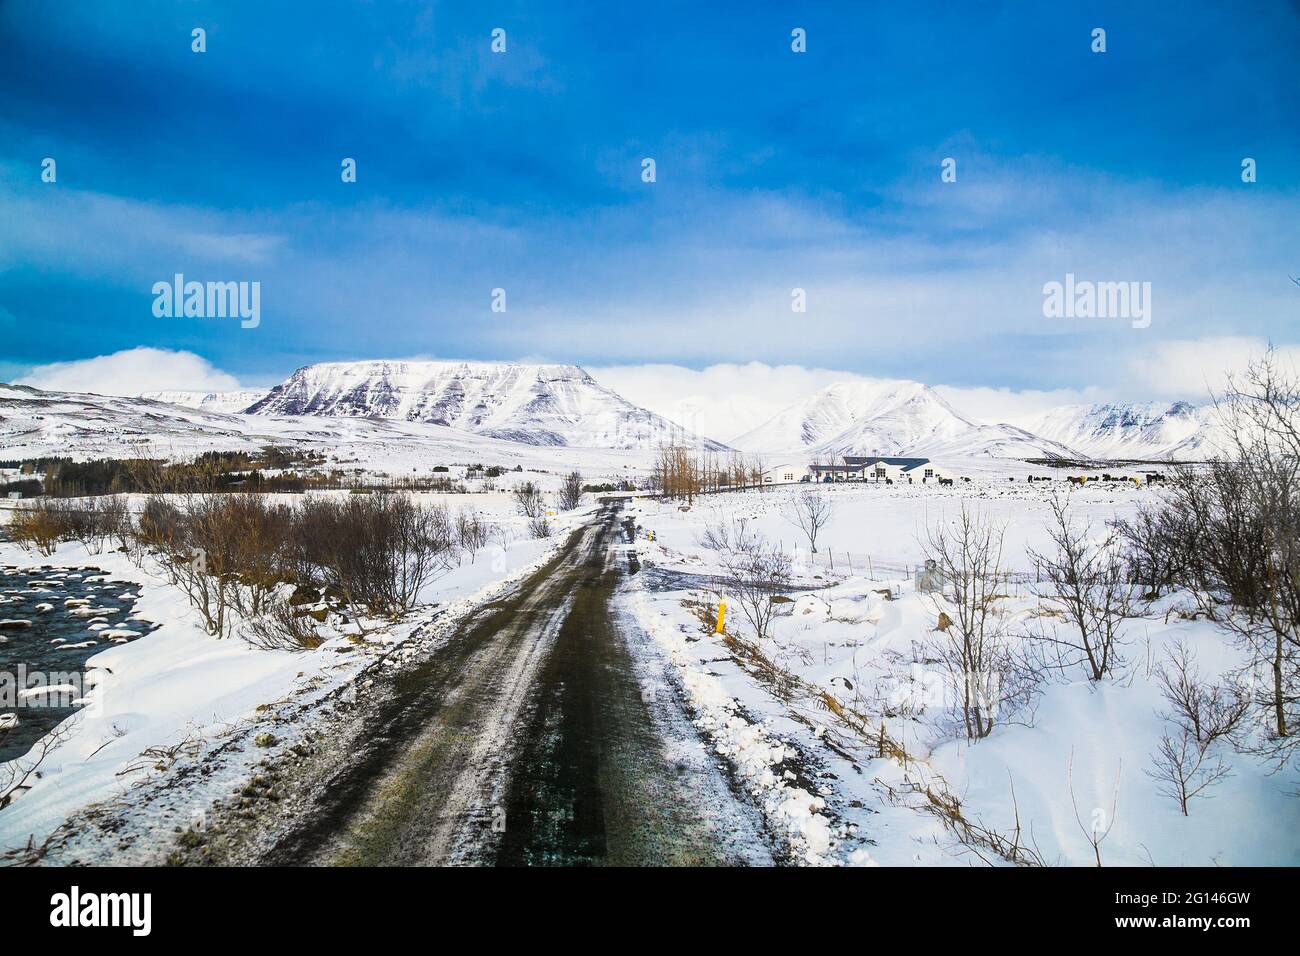 Island Road Trip, die Autobahn entlang von schneebedeckten Bergen, fantastische isländische Landschaft, malerischer Winterzeitblick, die Nacht verlagert sich auf einen Sonneneinfall Stockfoto